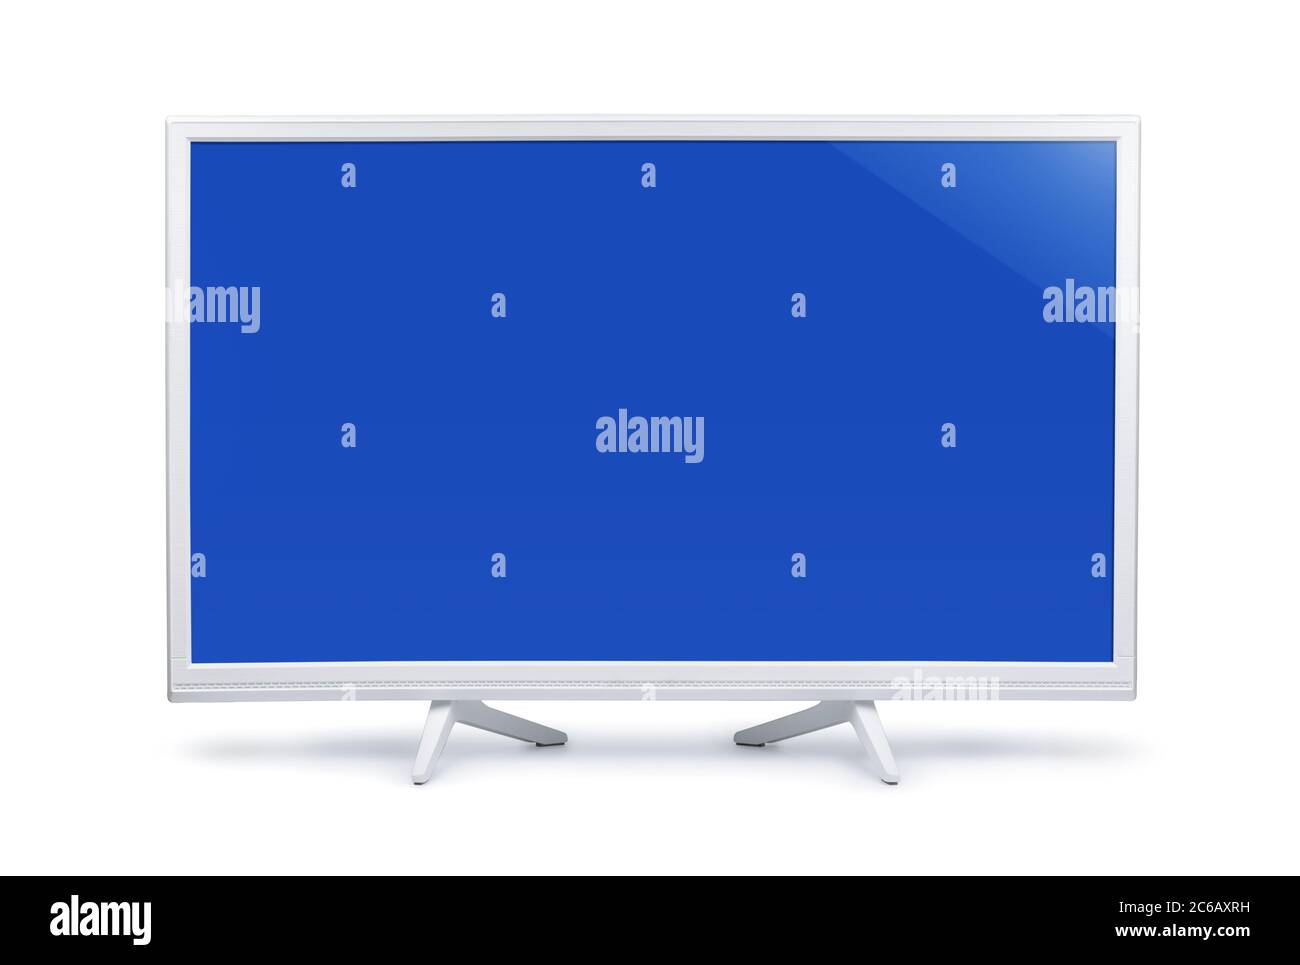 Tv led immagini e fotografie stock ad alta risoluzione - Alamy